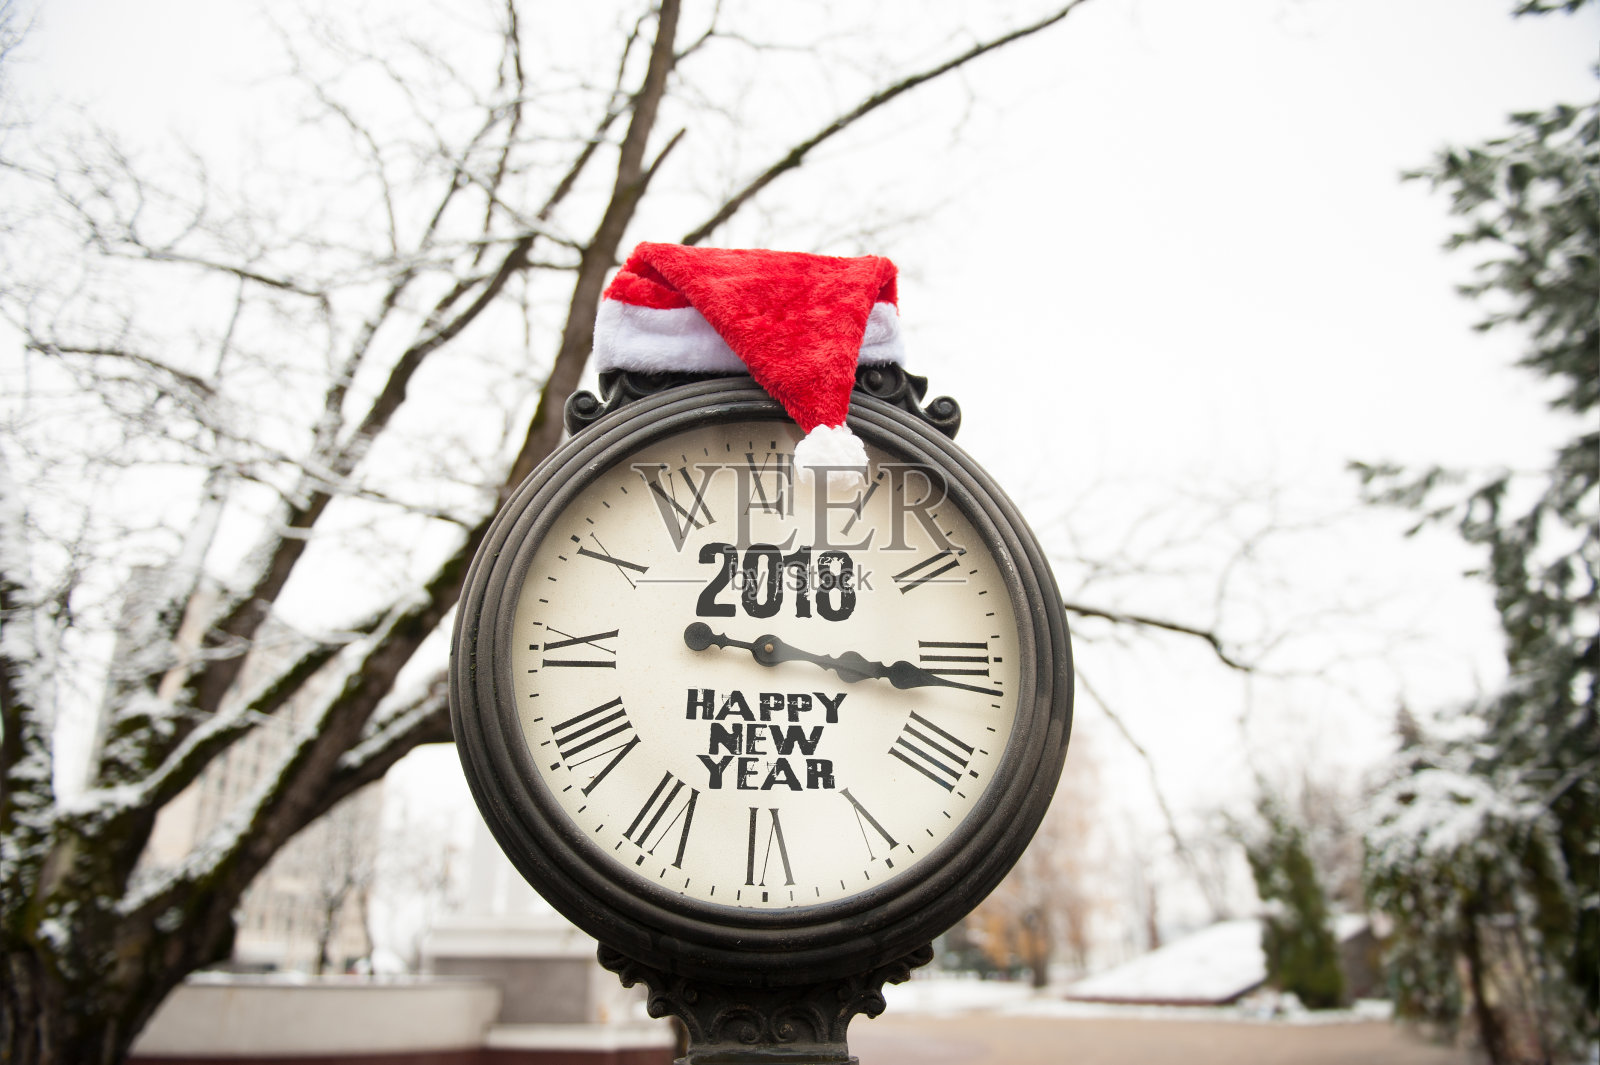 上面刻着“2018年新年快乐”的老式街道钟和圣诞老人帽照片摄影图片